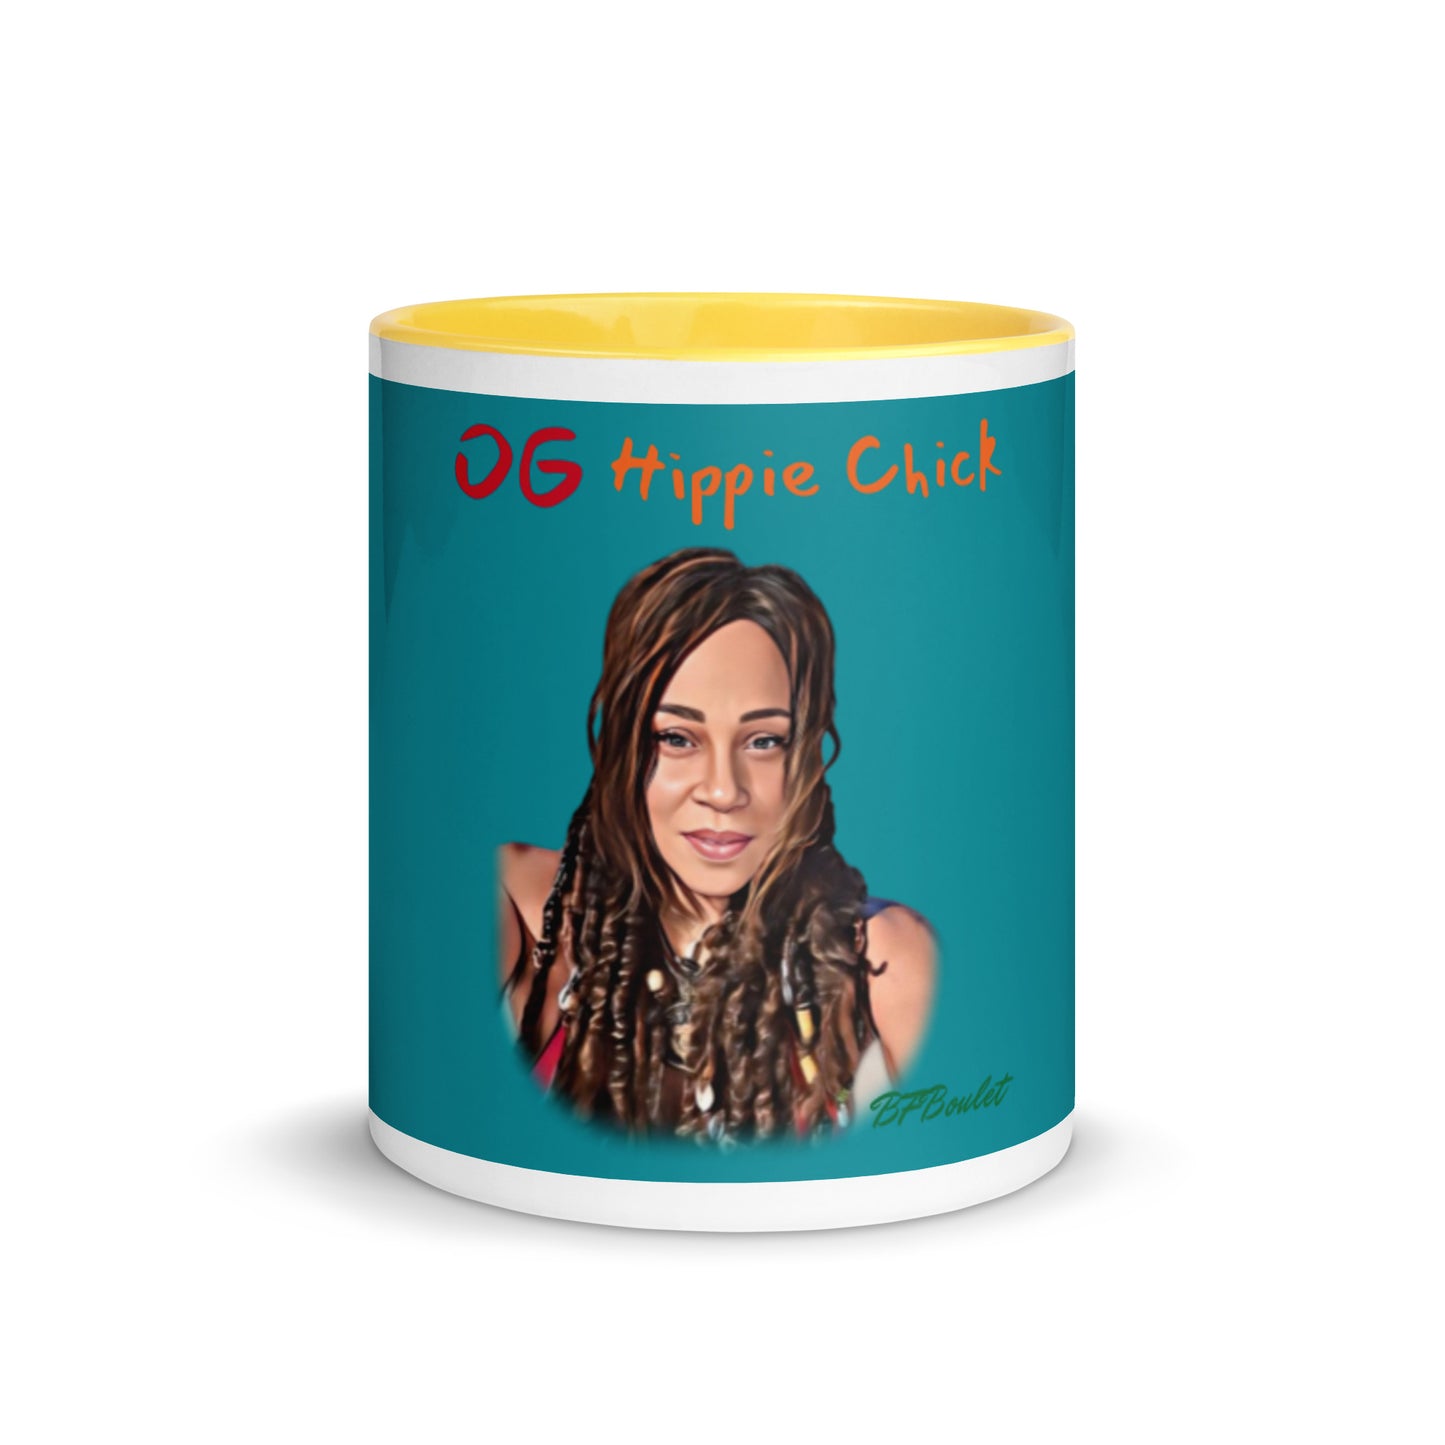 Teal Color Mug - OG Hippie Chick (BFBoulet)